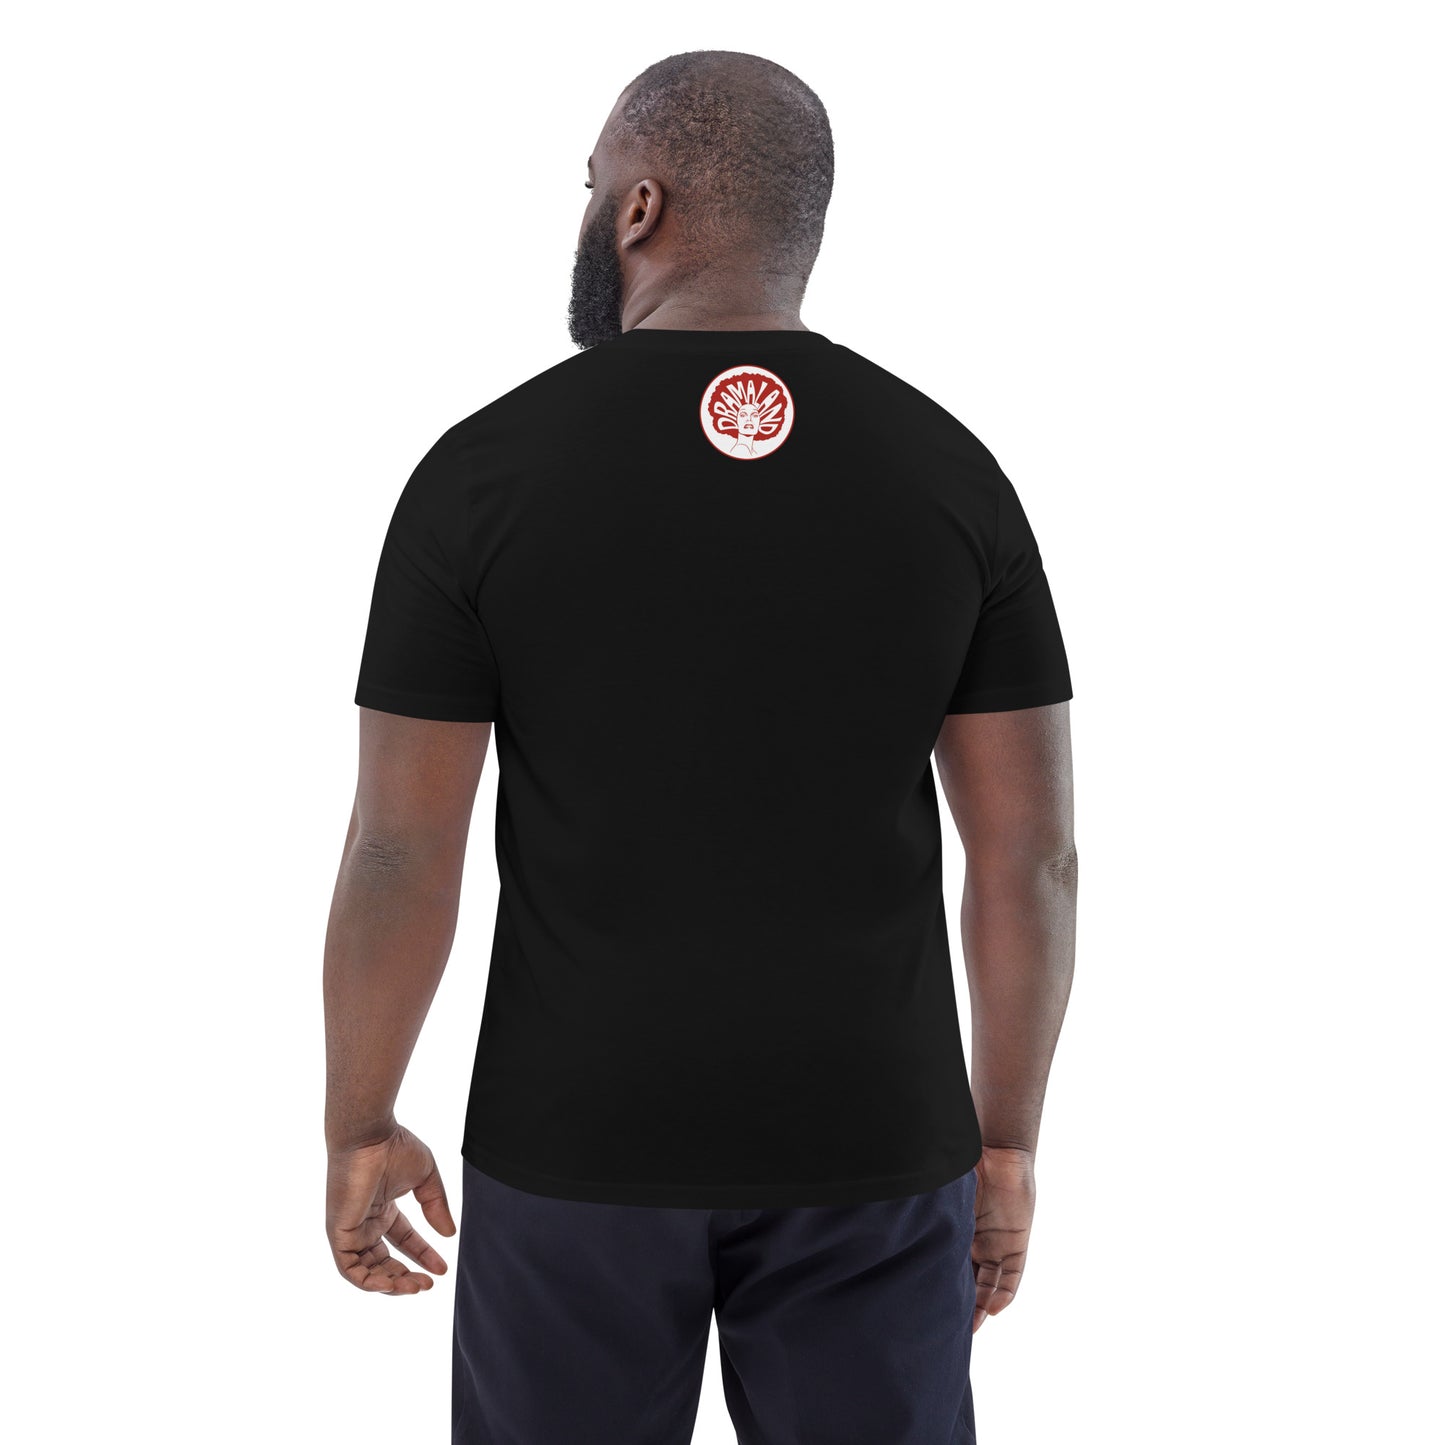 CHER OR NOT CHER short-sleeved black t-shirt